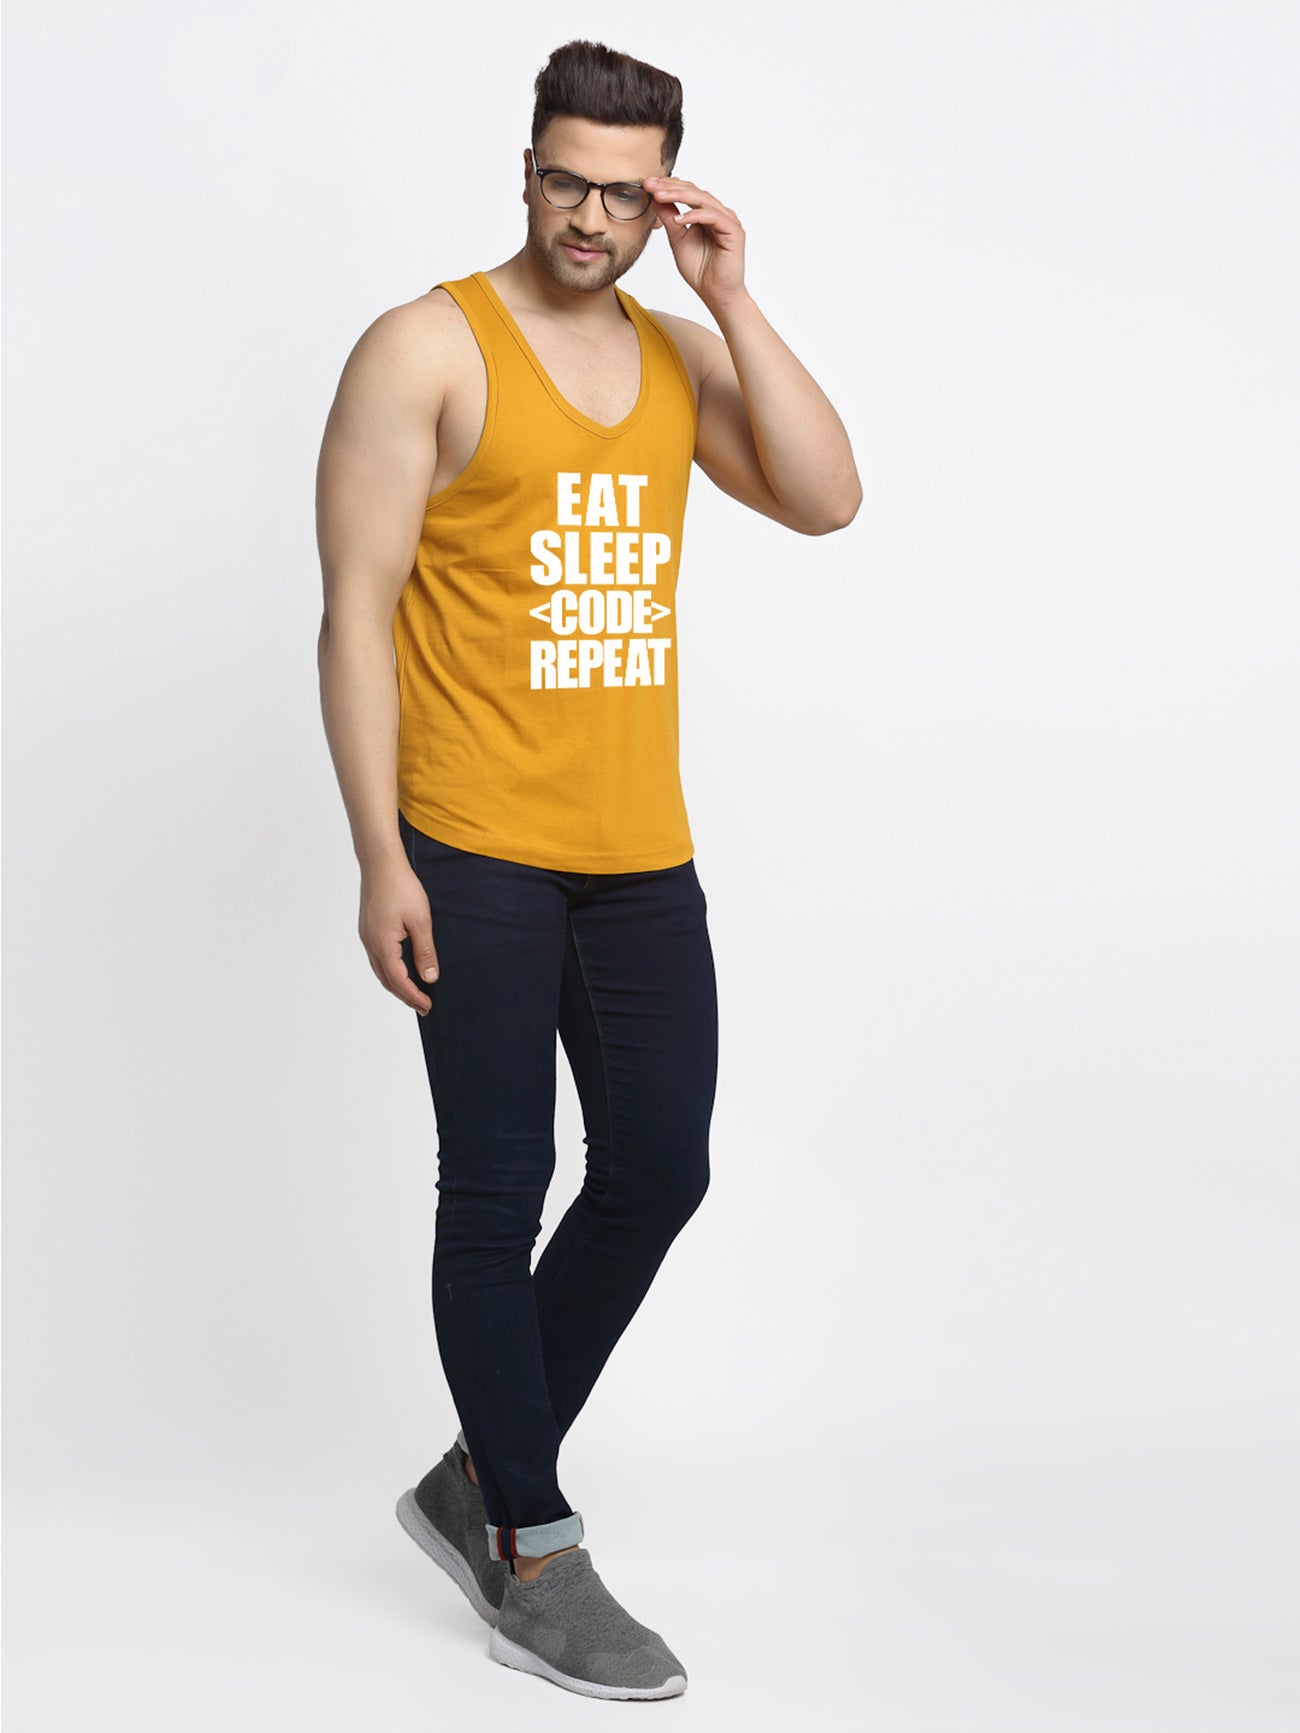 Eat Sleep Code Repeat Printed Innerwear Gym Vest - Friskers